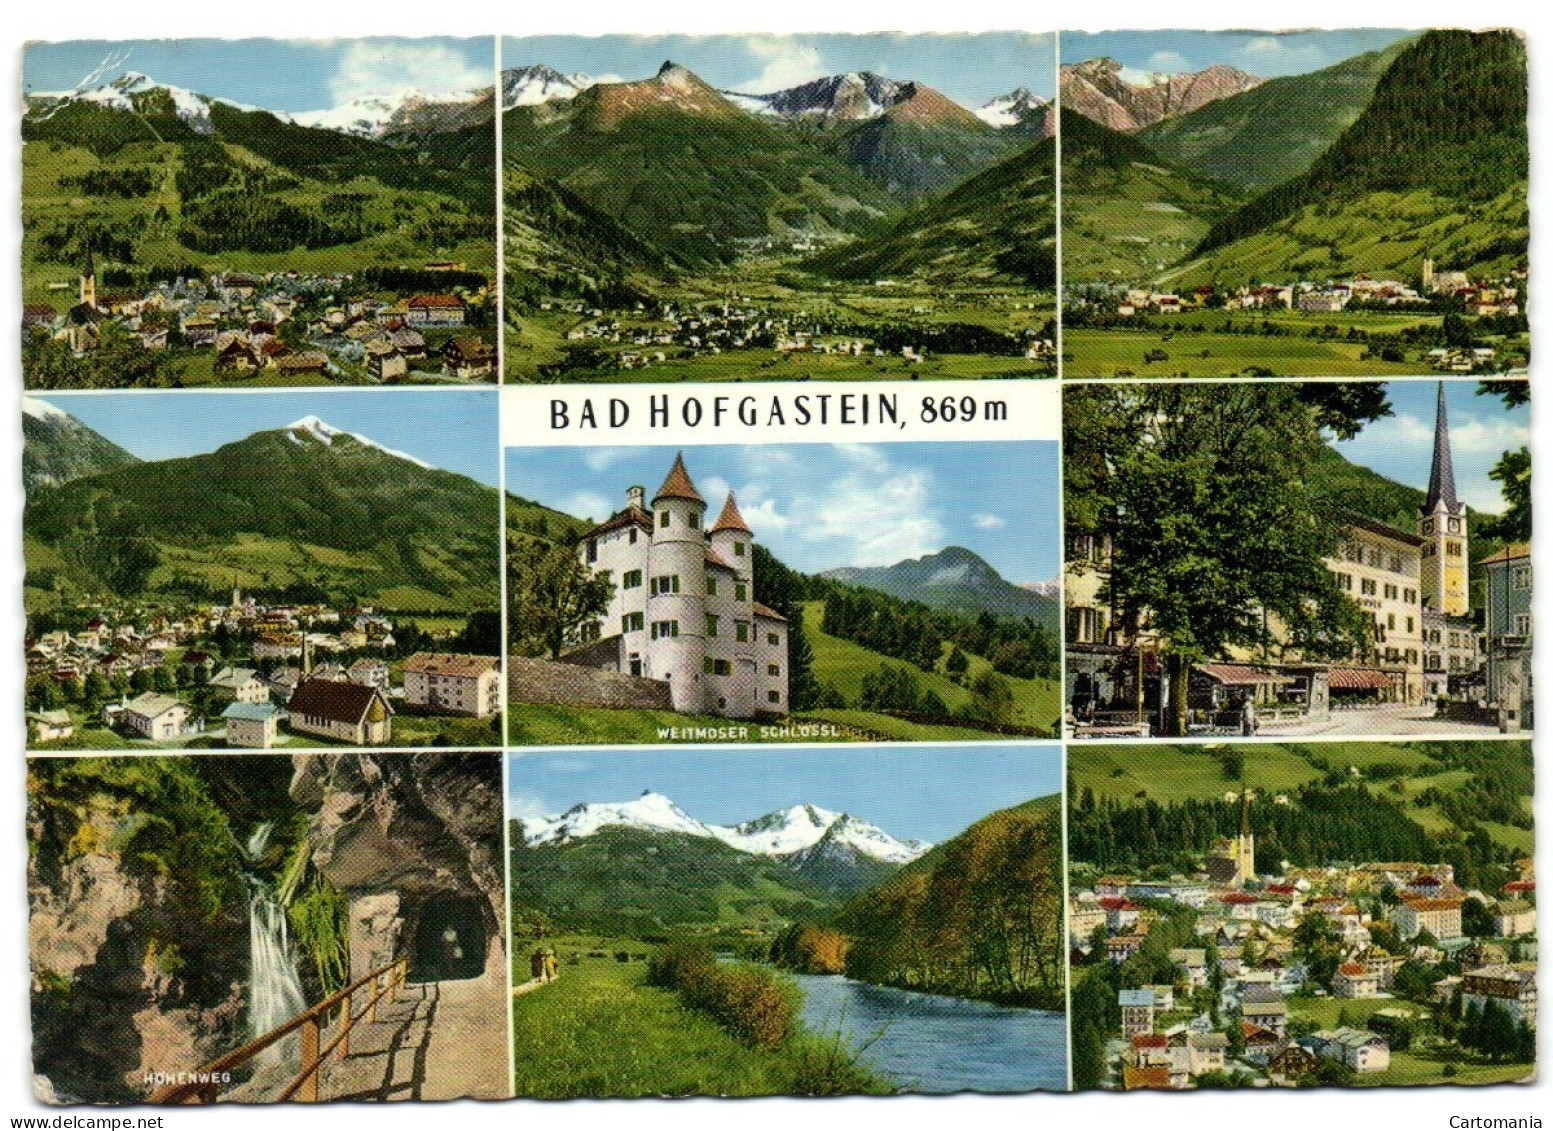 Weltkurort Bad Hofgastein Das Berühmte Thermalbad An Der Tauernbahn (Salzburg) - Bad Hofgastein